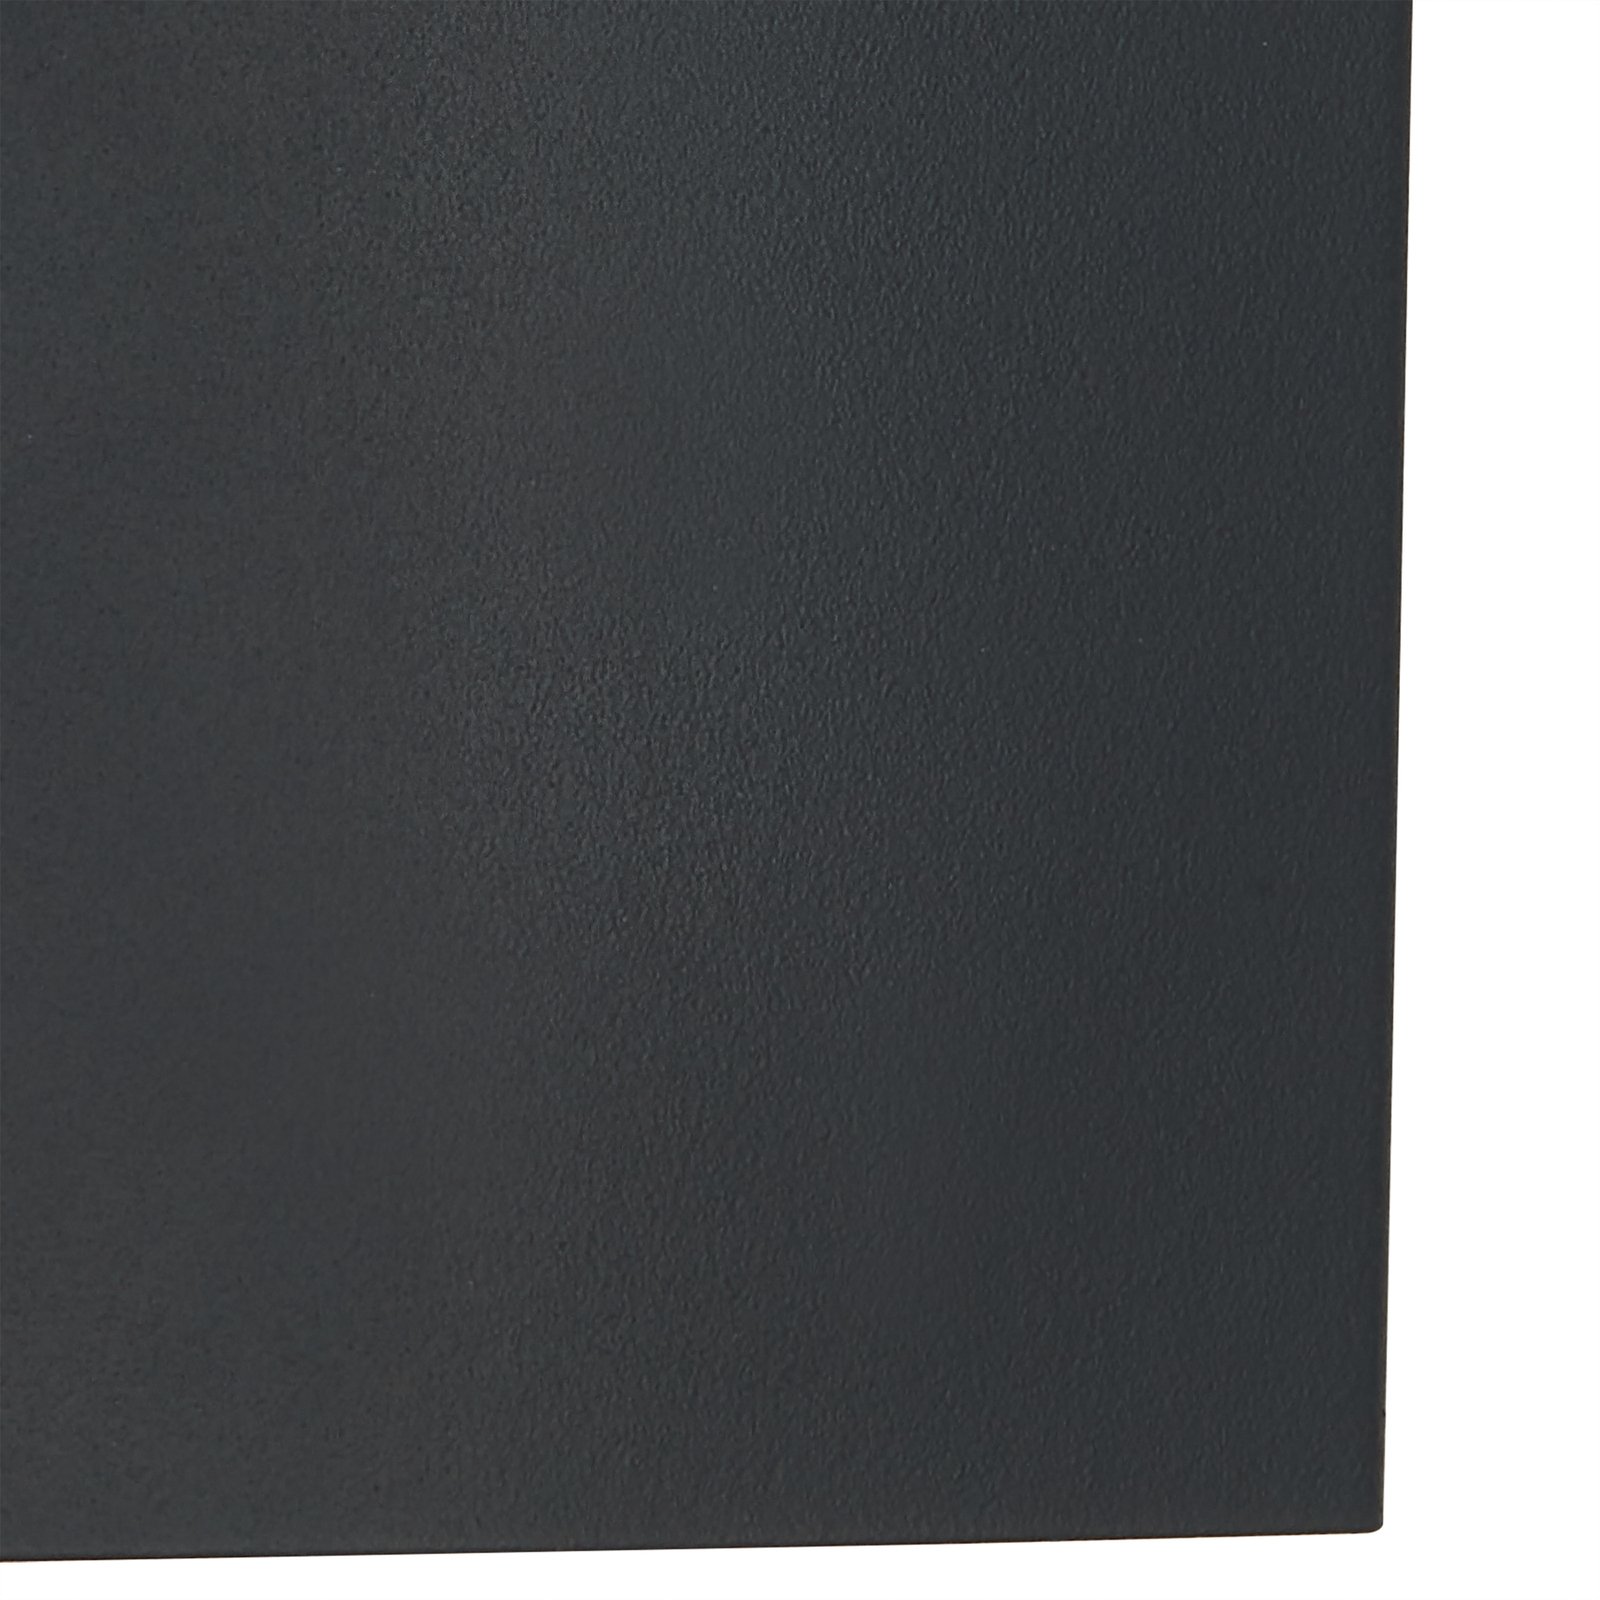 Lindby kültéri fali lámpa Vimal, E27, 32 cm, fekete, alumínium